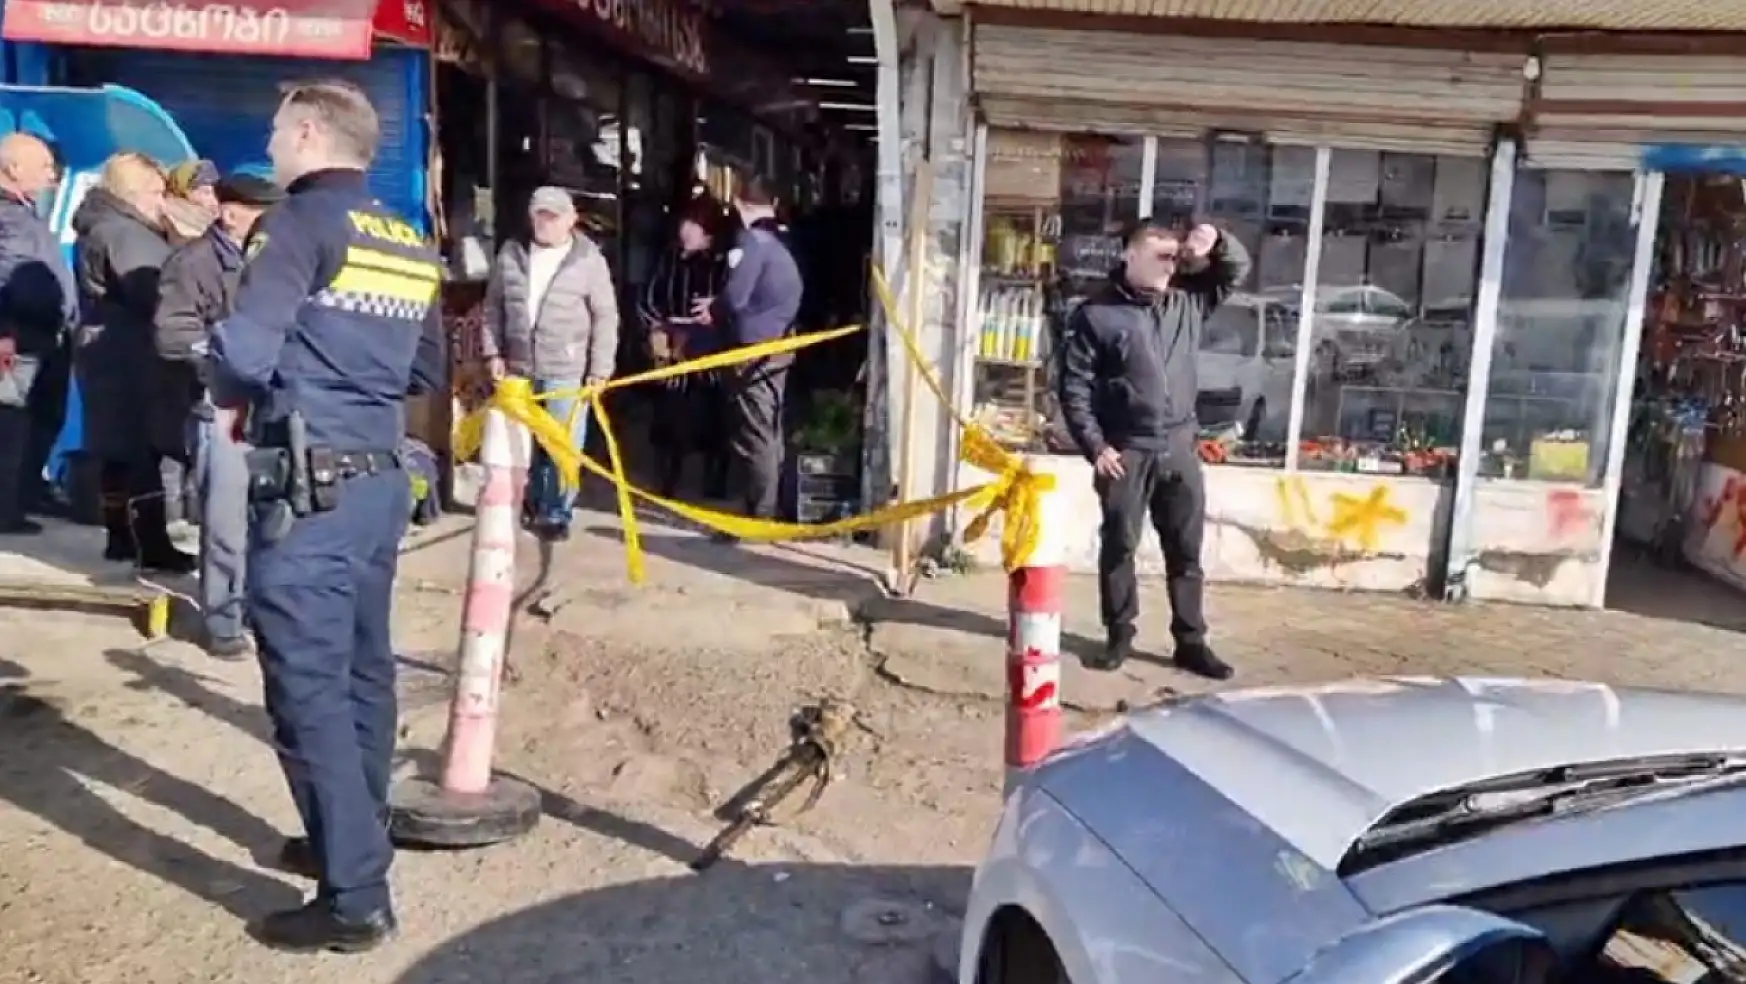 Gürcistan'da çarşıda silahlı saldırı: 4 ölü, 1 yaralı